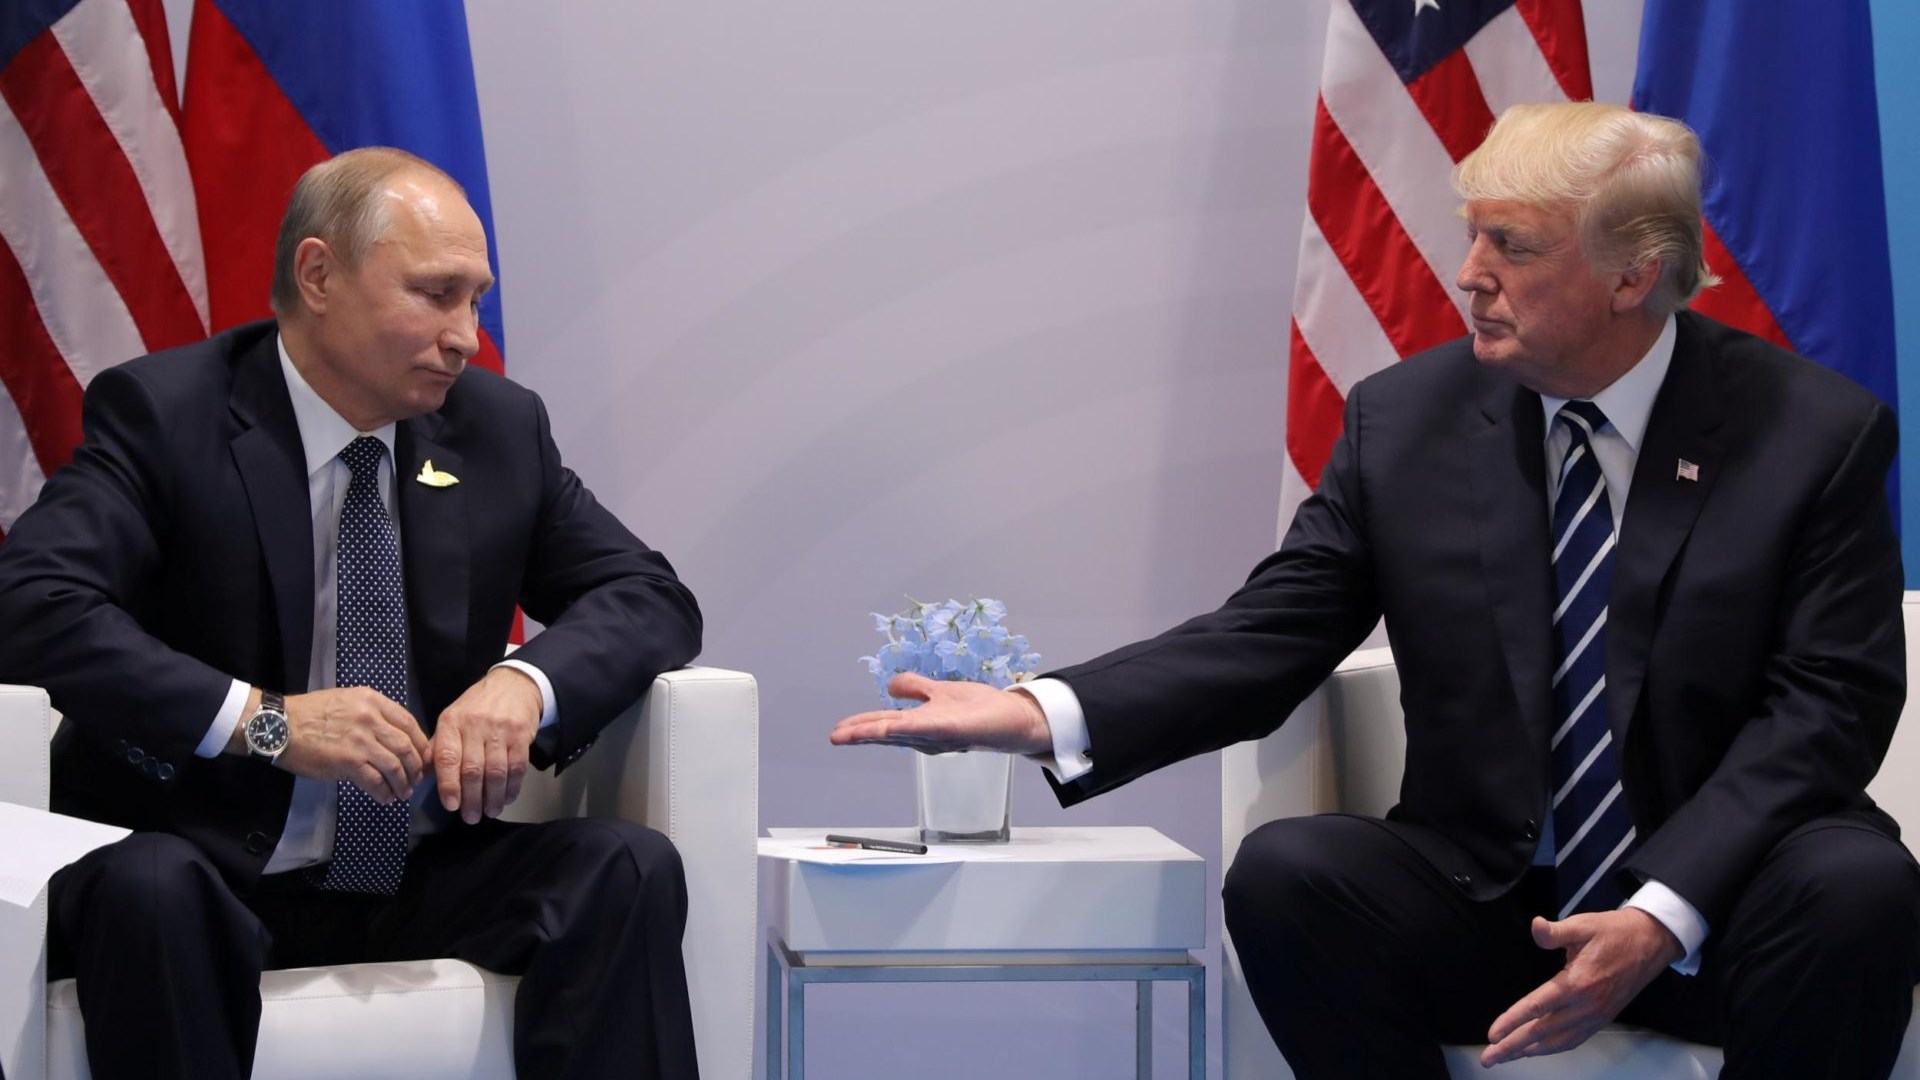 Λευκός Οίκος: Οι κυρώσεις σε βάρος της Μόσχας δεν θα επηρεάσουν τα σχέδια για τη συνάντηση Τραμπ- Πούτιν